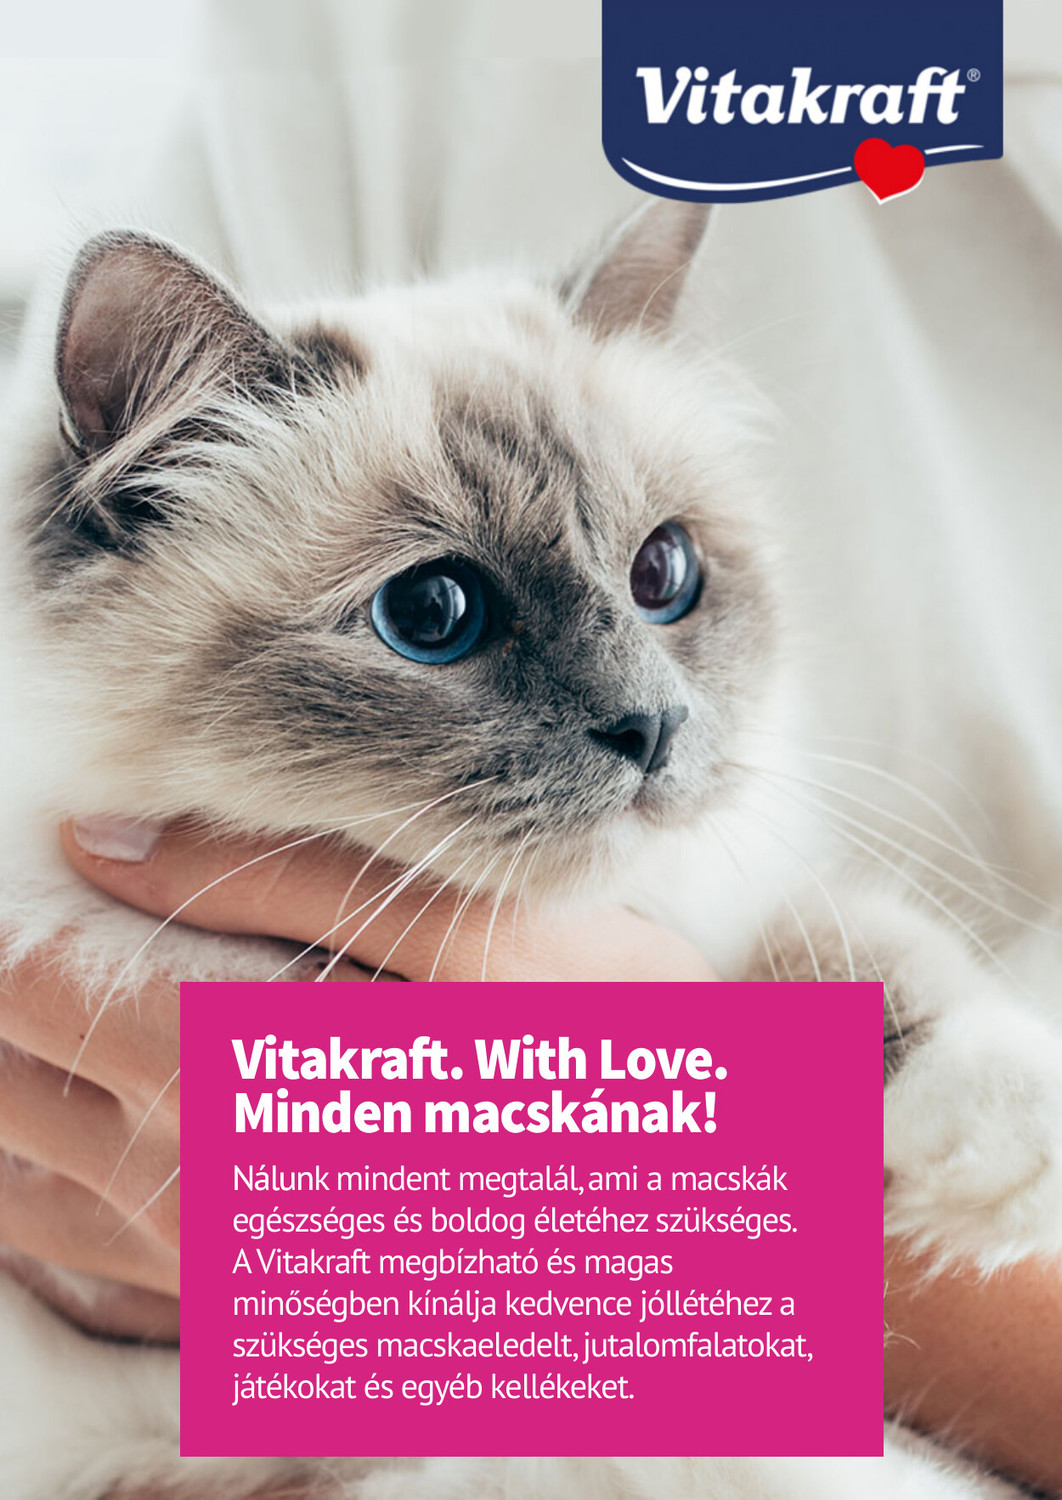 Vitakraft Poésie Multipack - Varietăți de hrană în aspic pentru pisici, la tăvițe - zoom